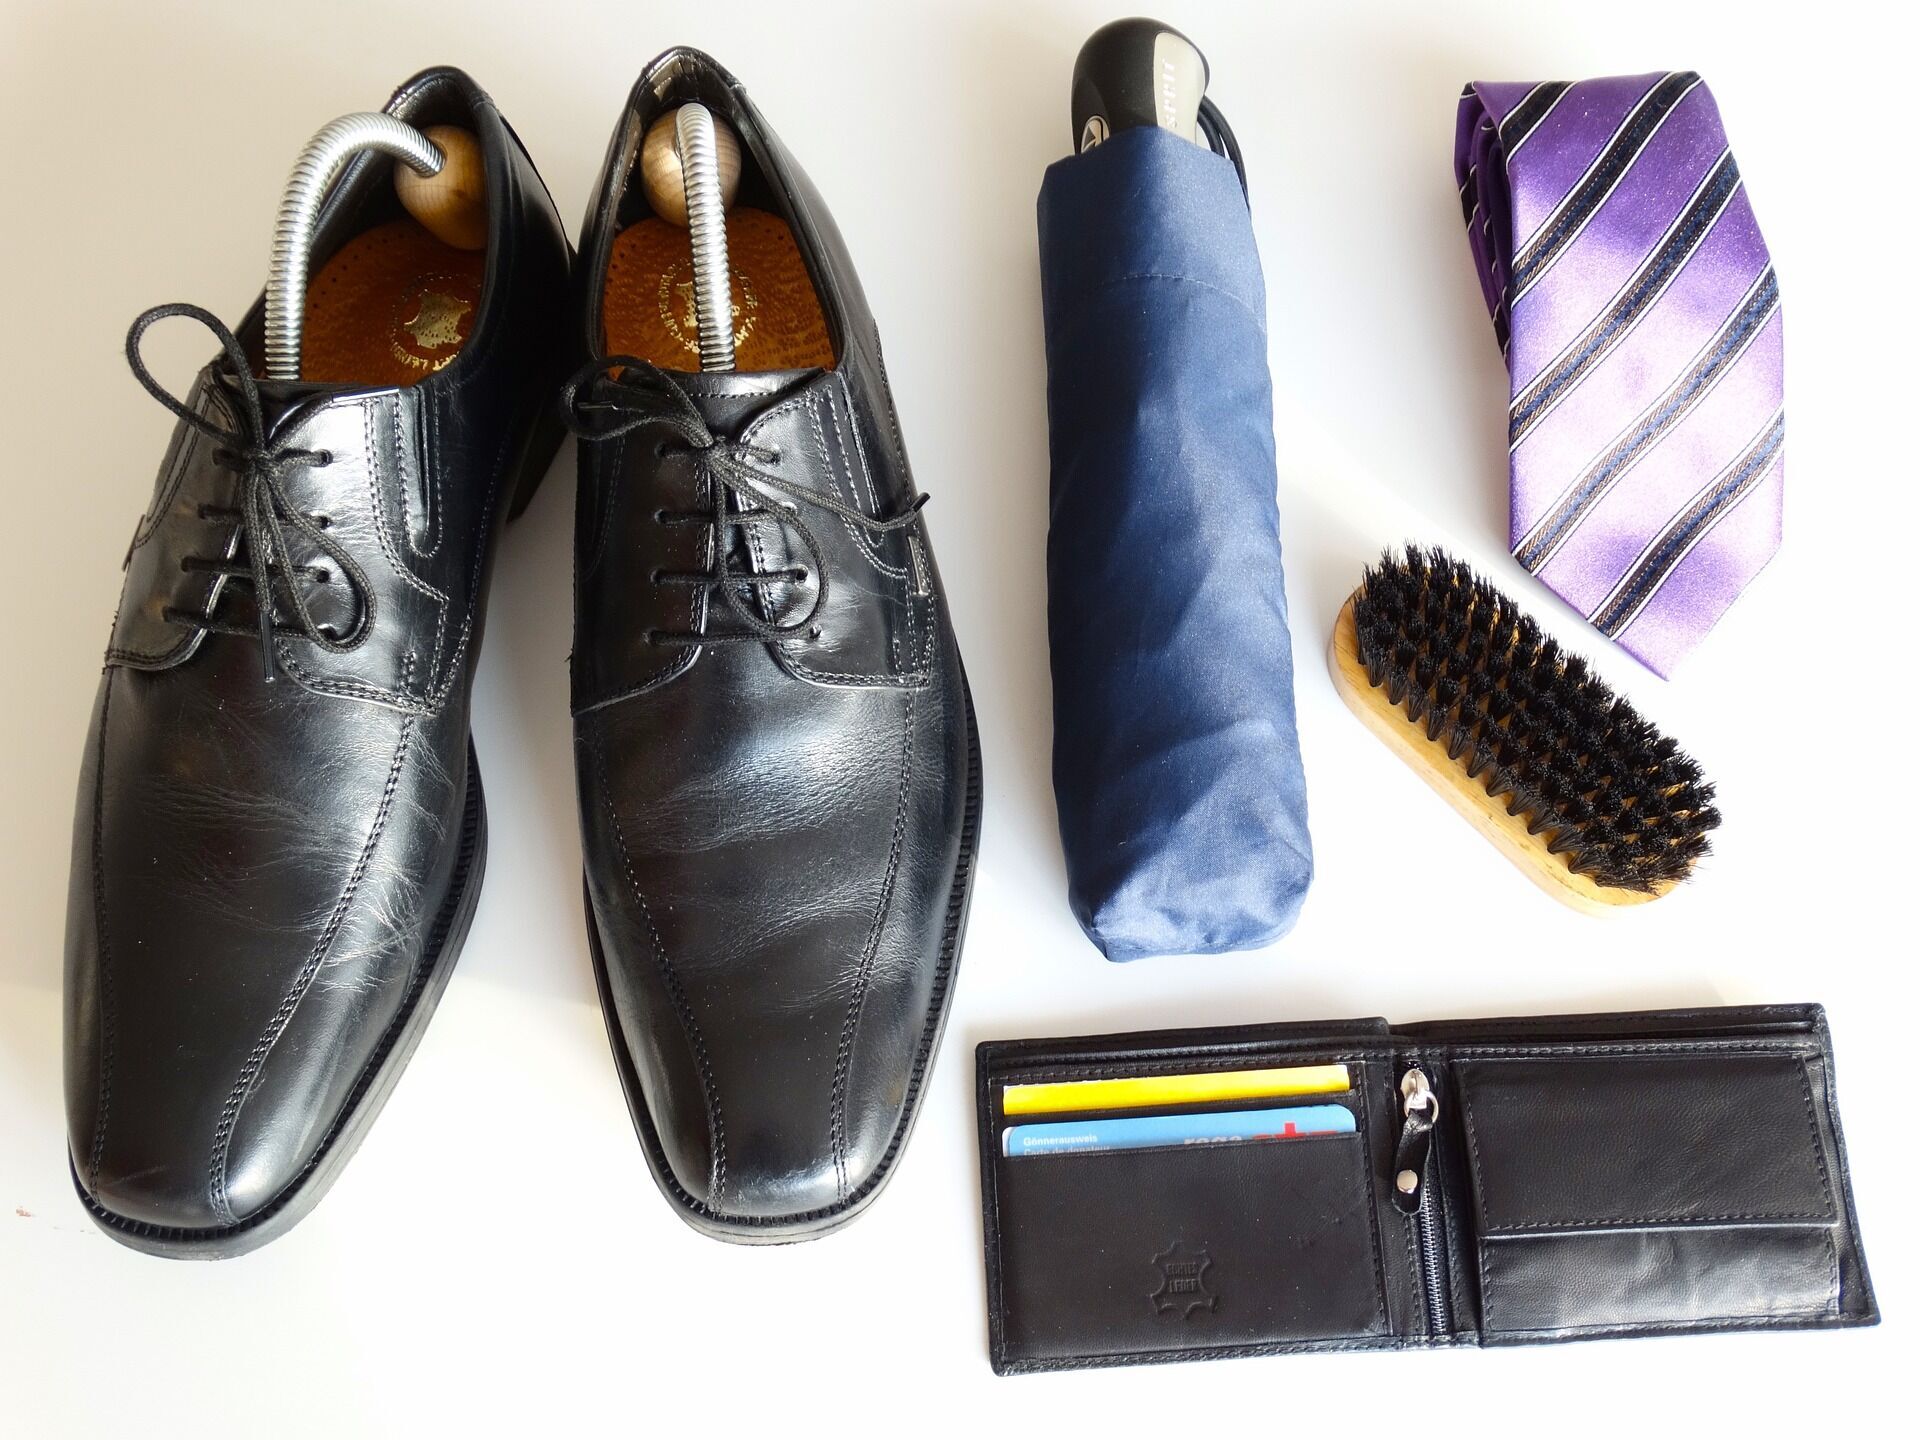 4 поради, як продовжити життя взуття: чим її чистити і де зберігати